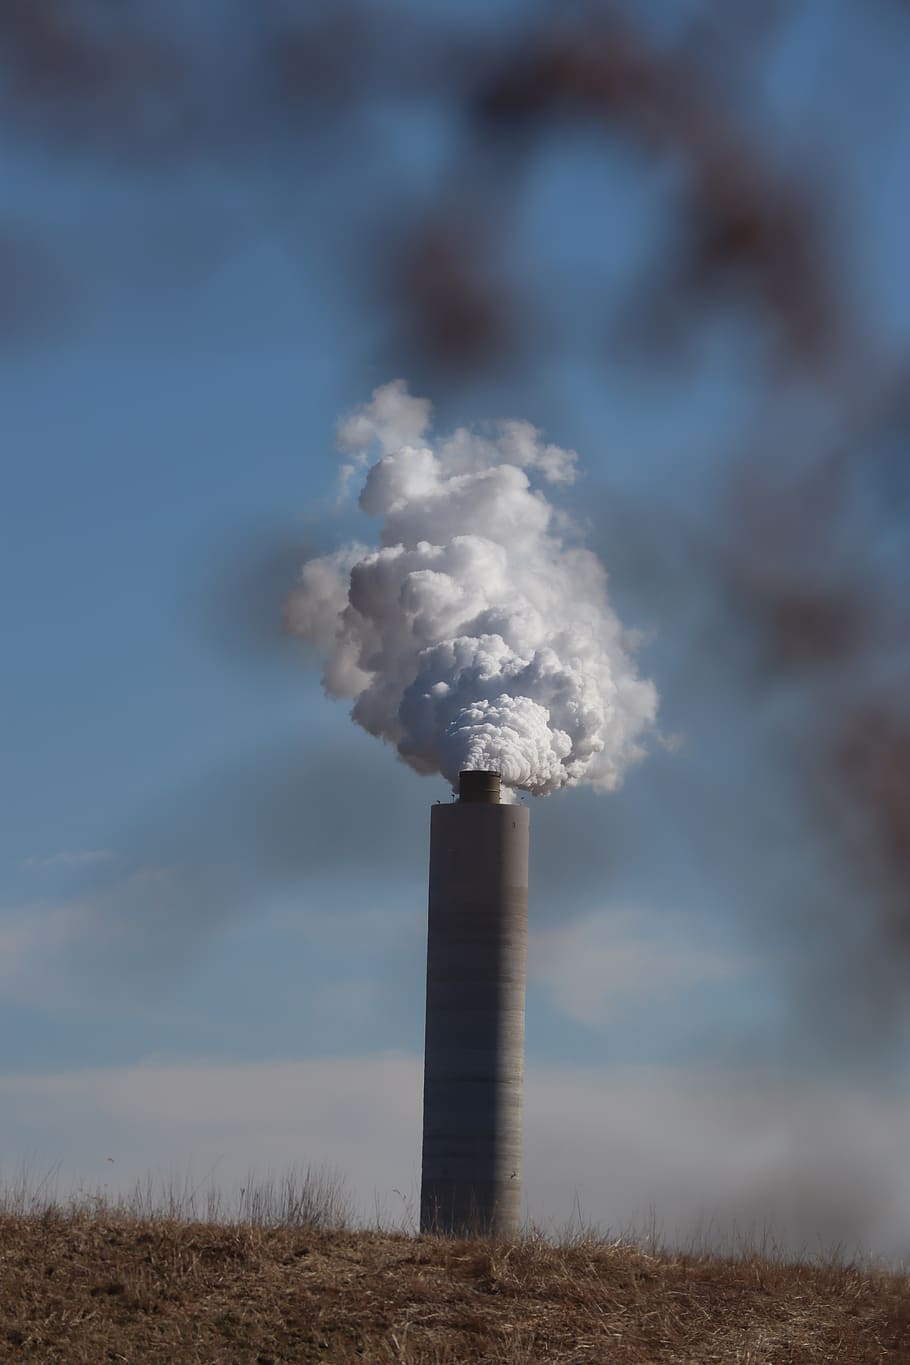 contaminación, contaminación del aire, humo, chimenea, planta de energía, planta, muerto, follaje, humo - estructura física, ambiente